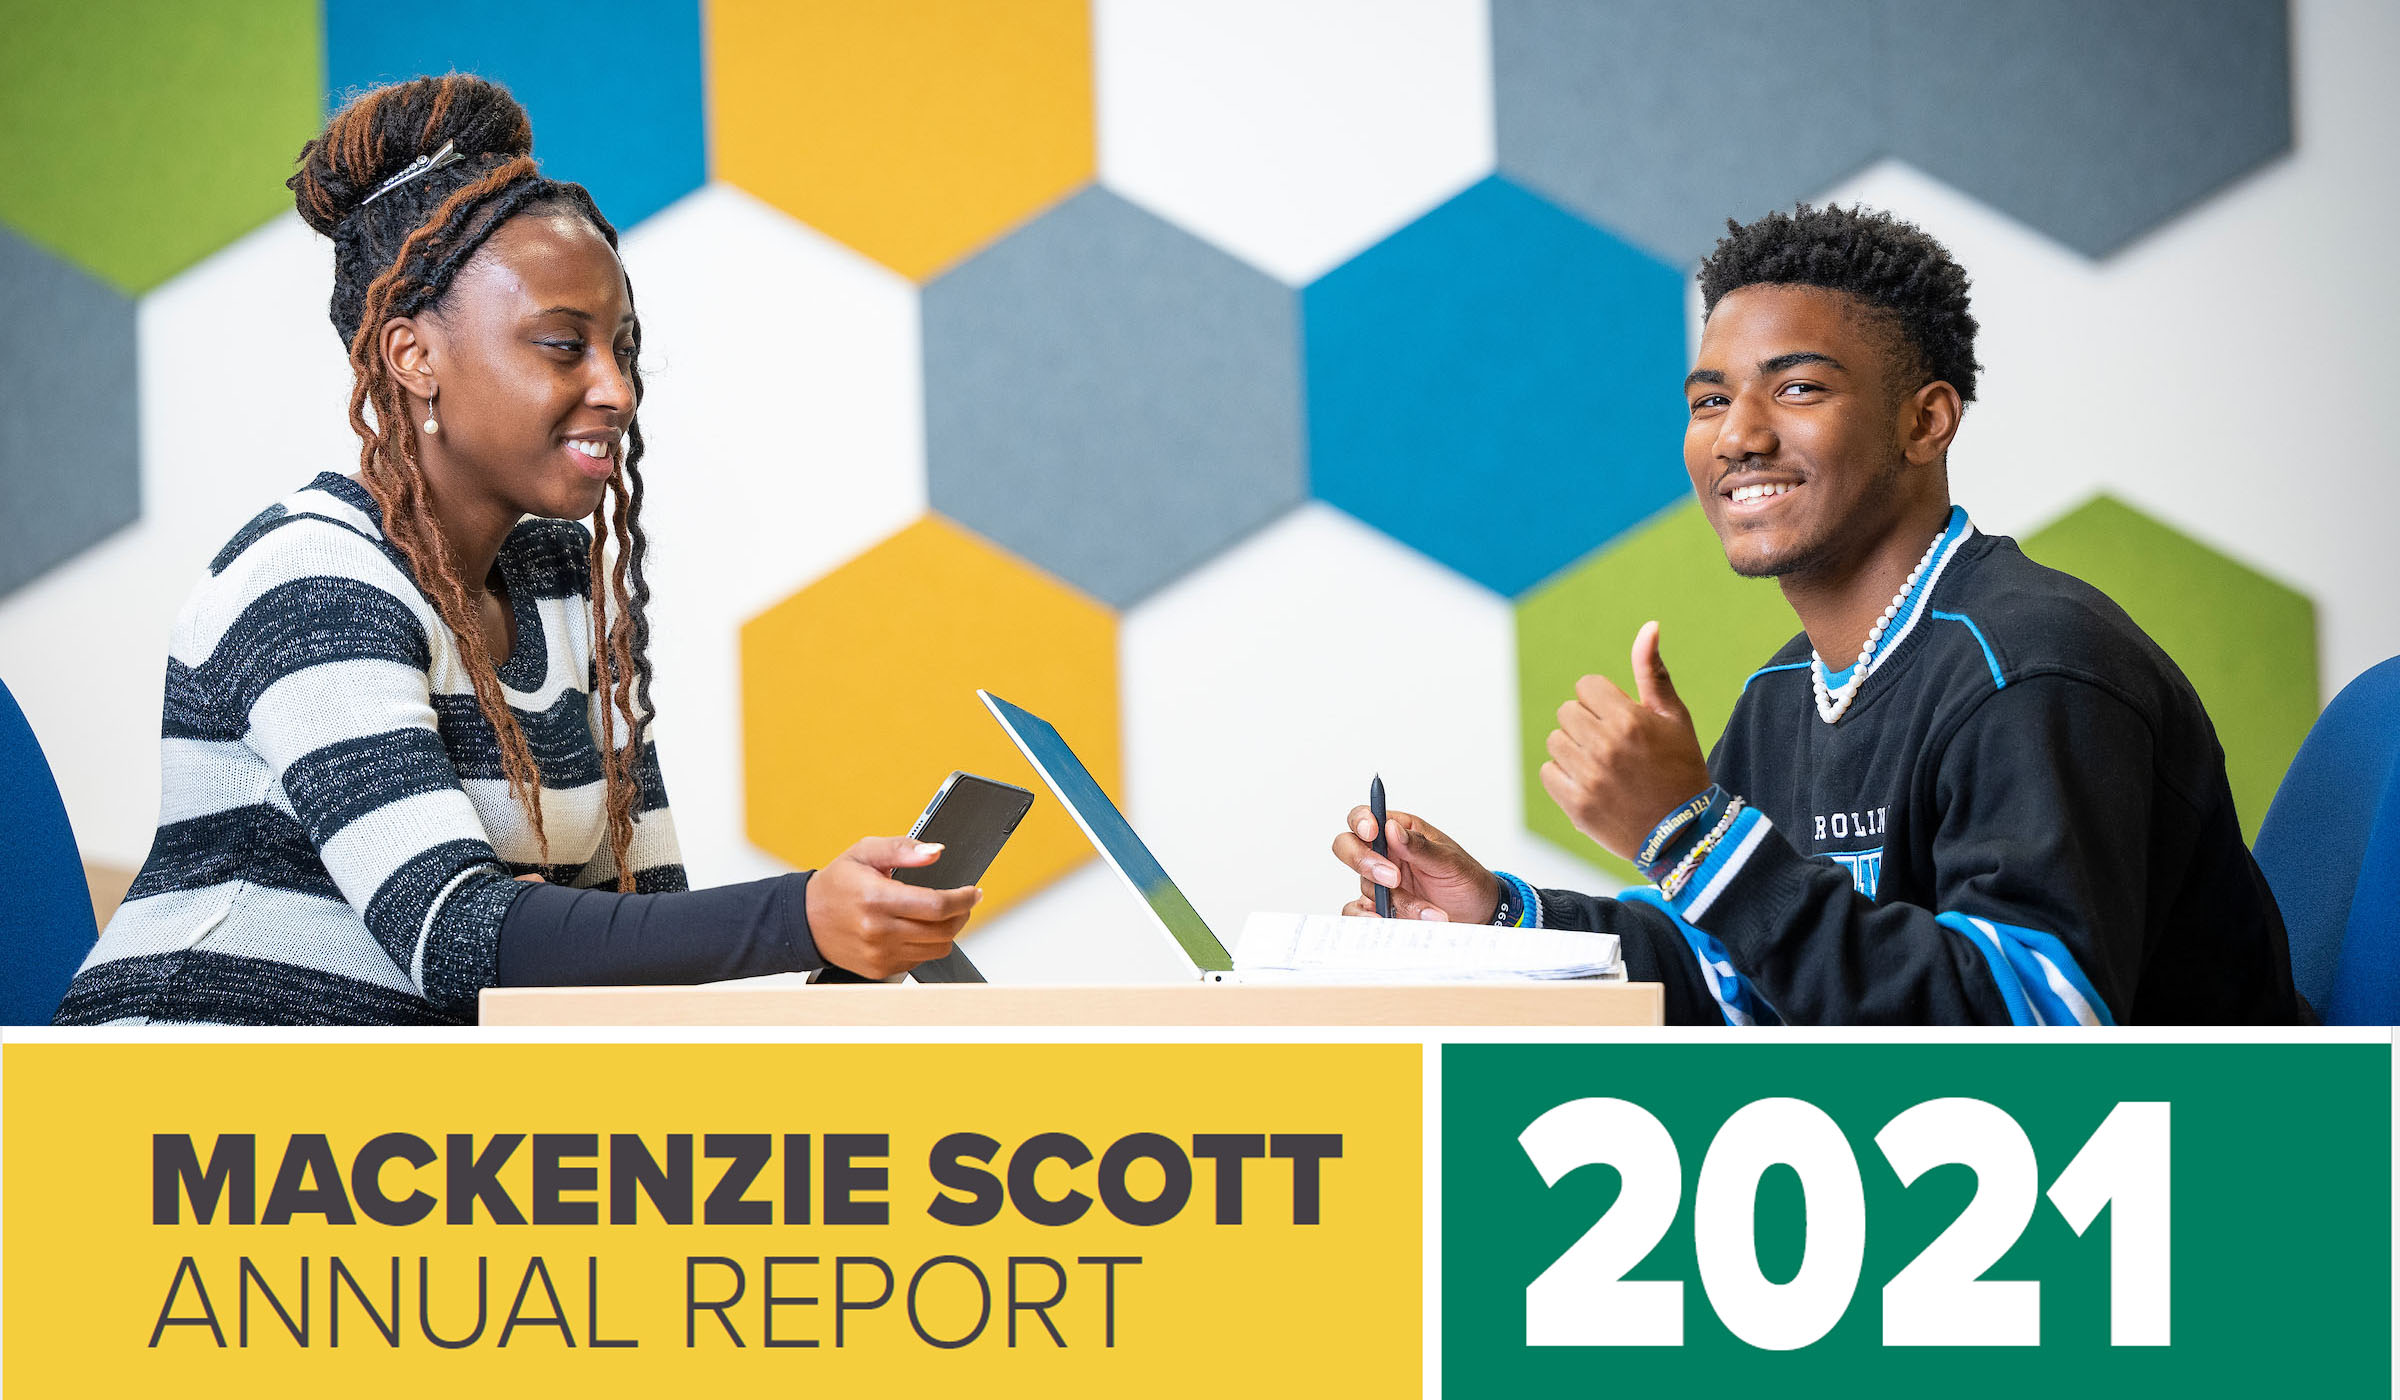 MacKenzie Scott Annual Report 2021